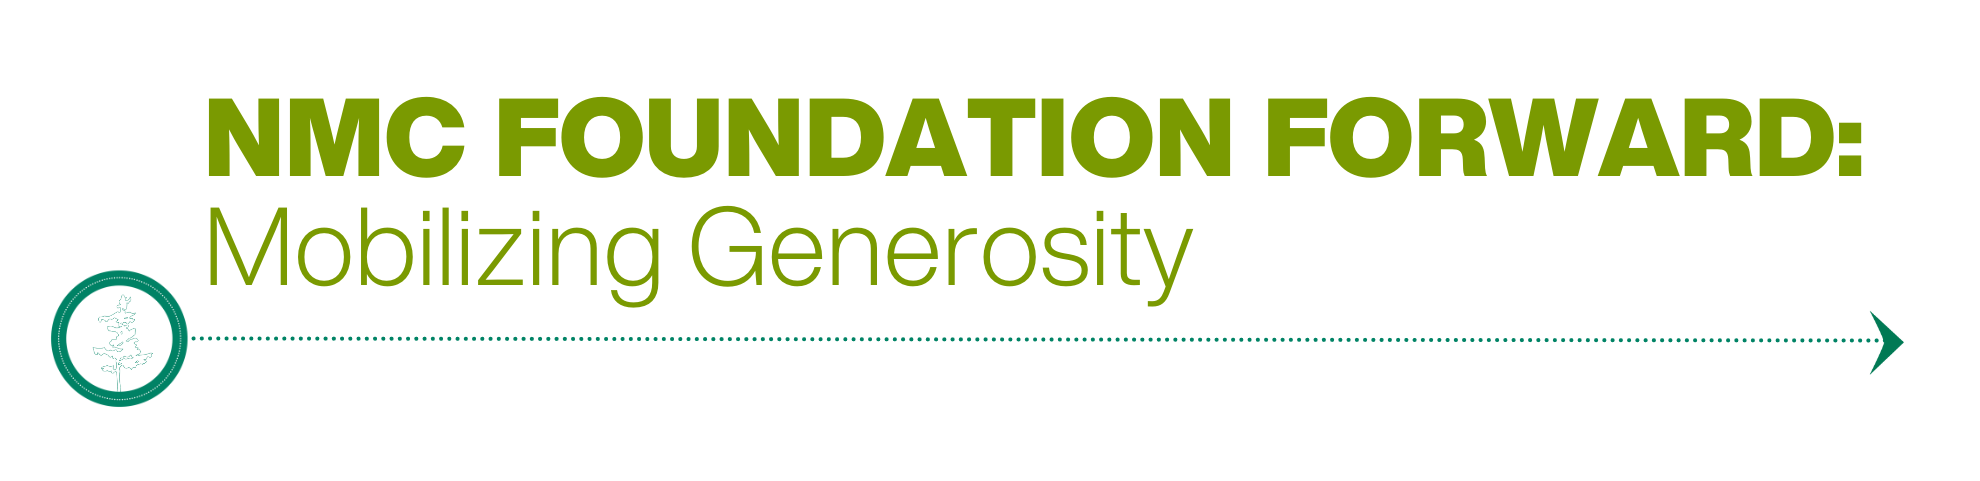 NMC Foundation Forward: Mobilizing Generosity